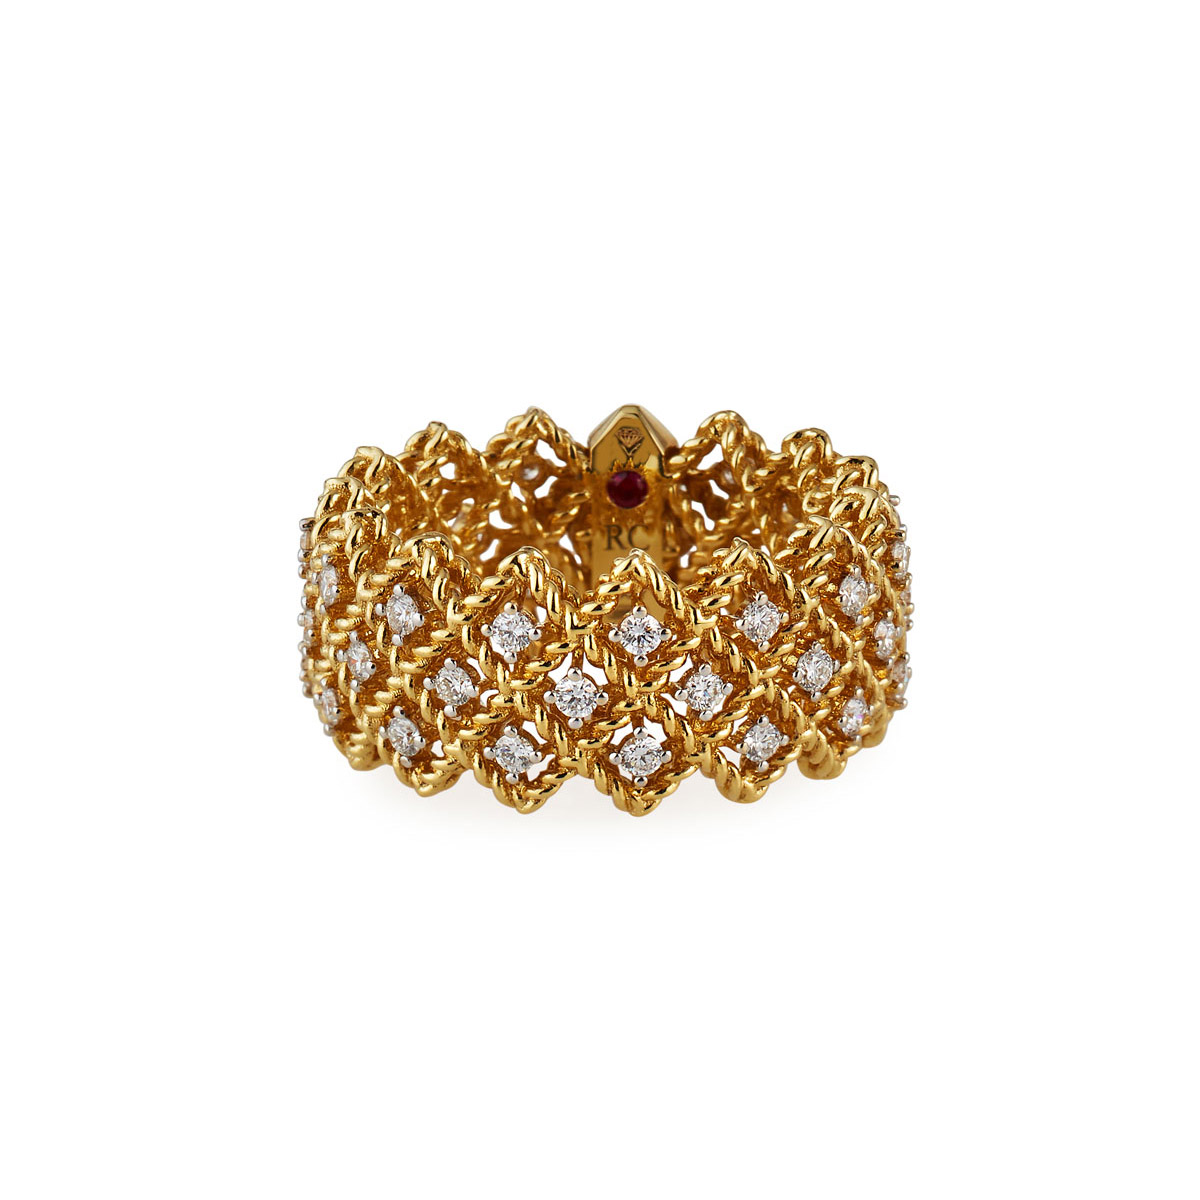 Grosir OEM/ODM Perhiasan Cincin Tiga Baris Kustom dalam desainer perhiasan perak vermail Emas Kuning 18K